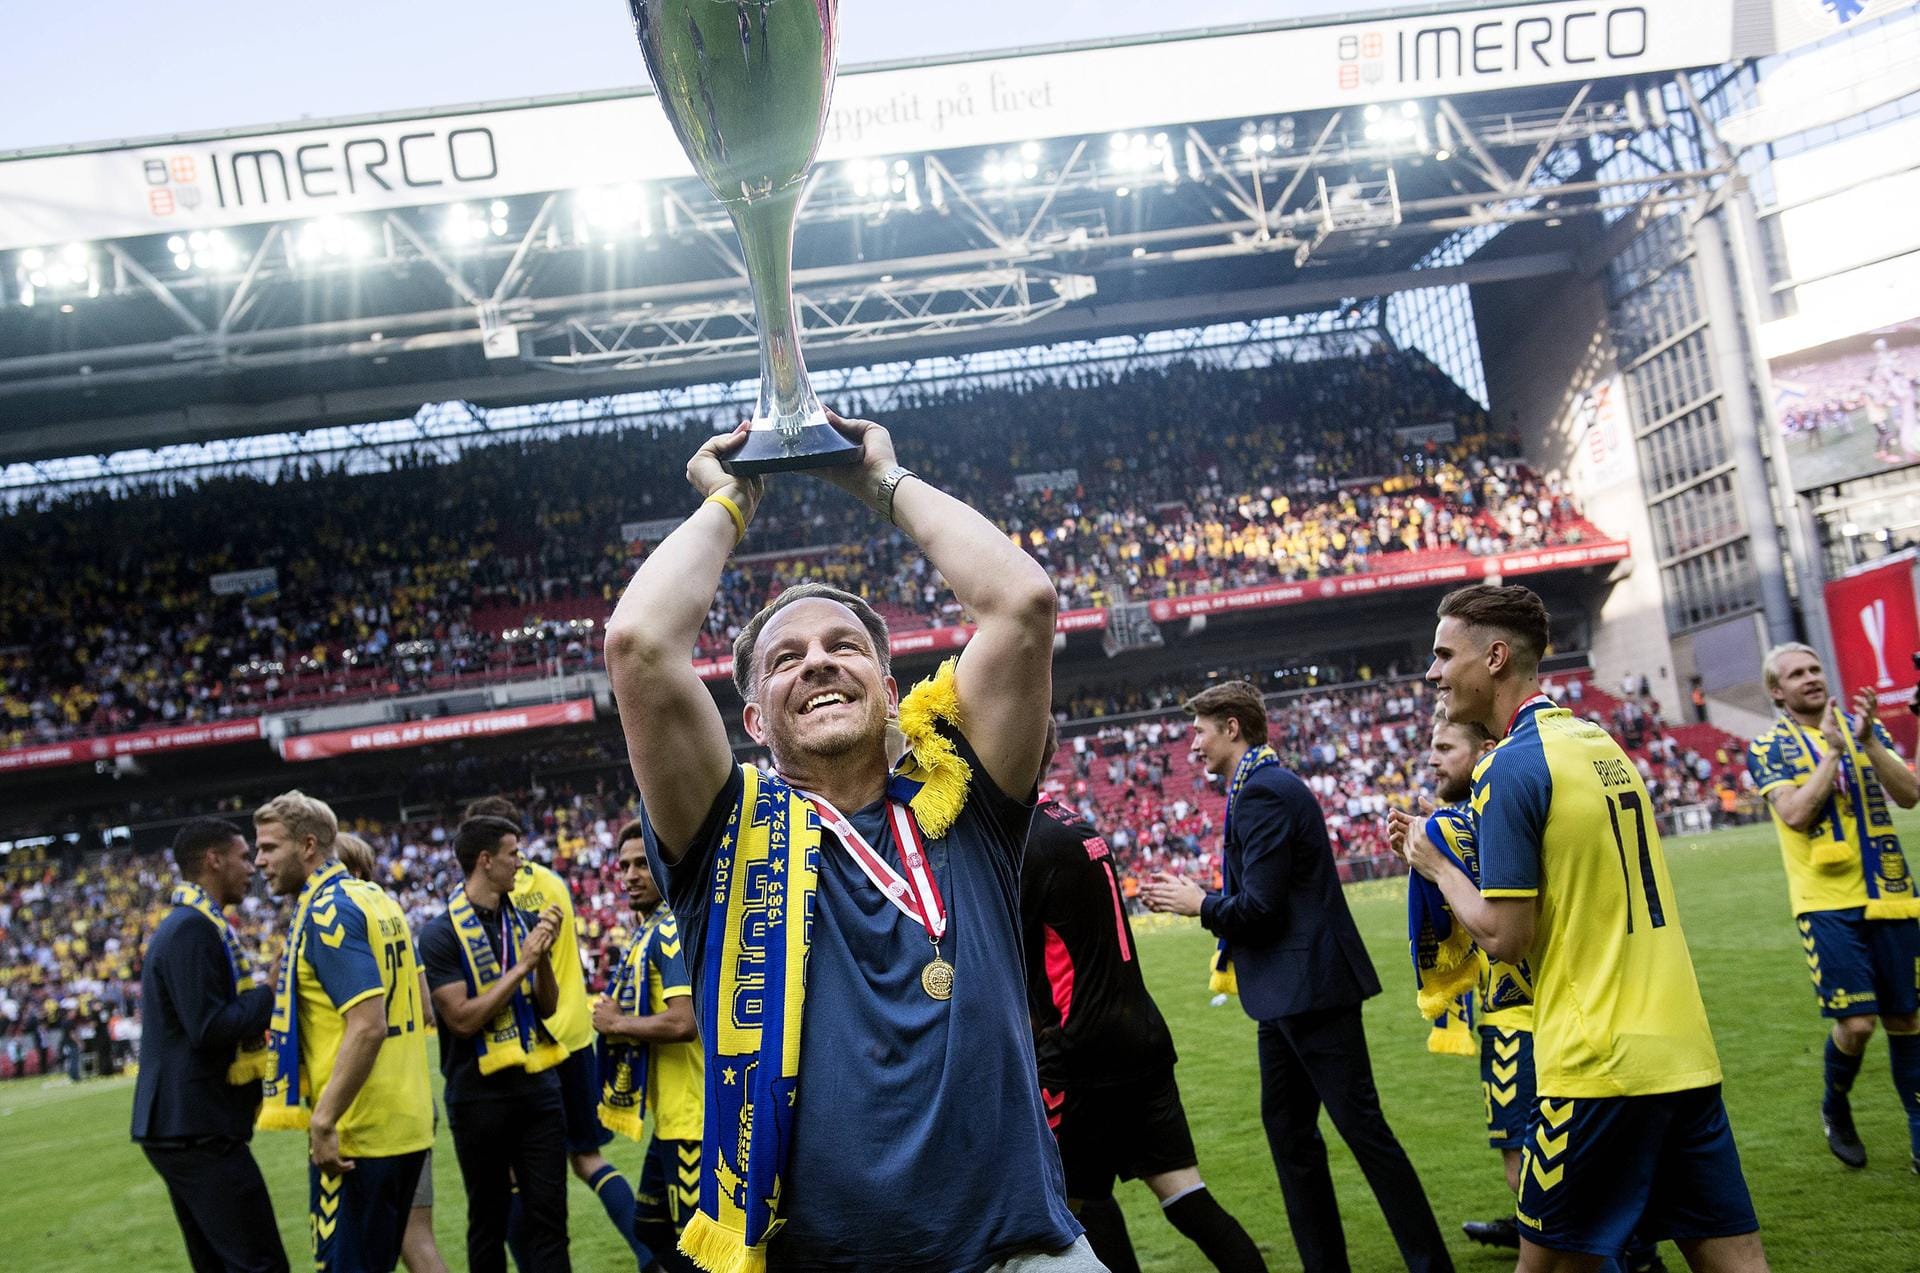 Als Alexander Zorniger in Dänemark Pokalsieger wurde, feierte er den Titel mit Bröndby IF. Bröndby Kopenhagen war es zumindest nicht, denn es existiert kein Verein mit diesem Namen im dänischen Fußball-Oberhaus.